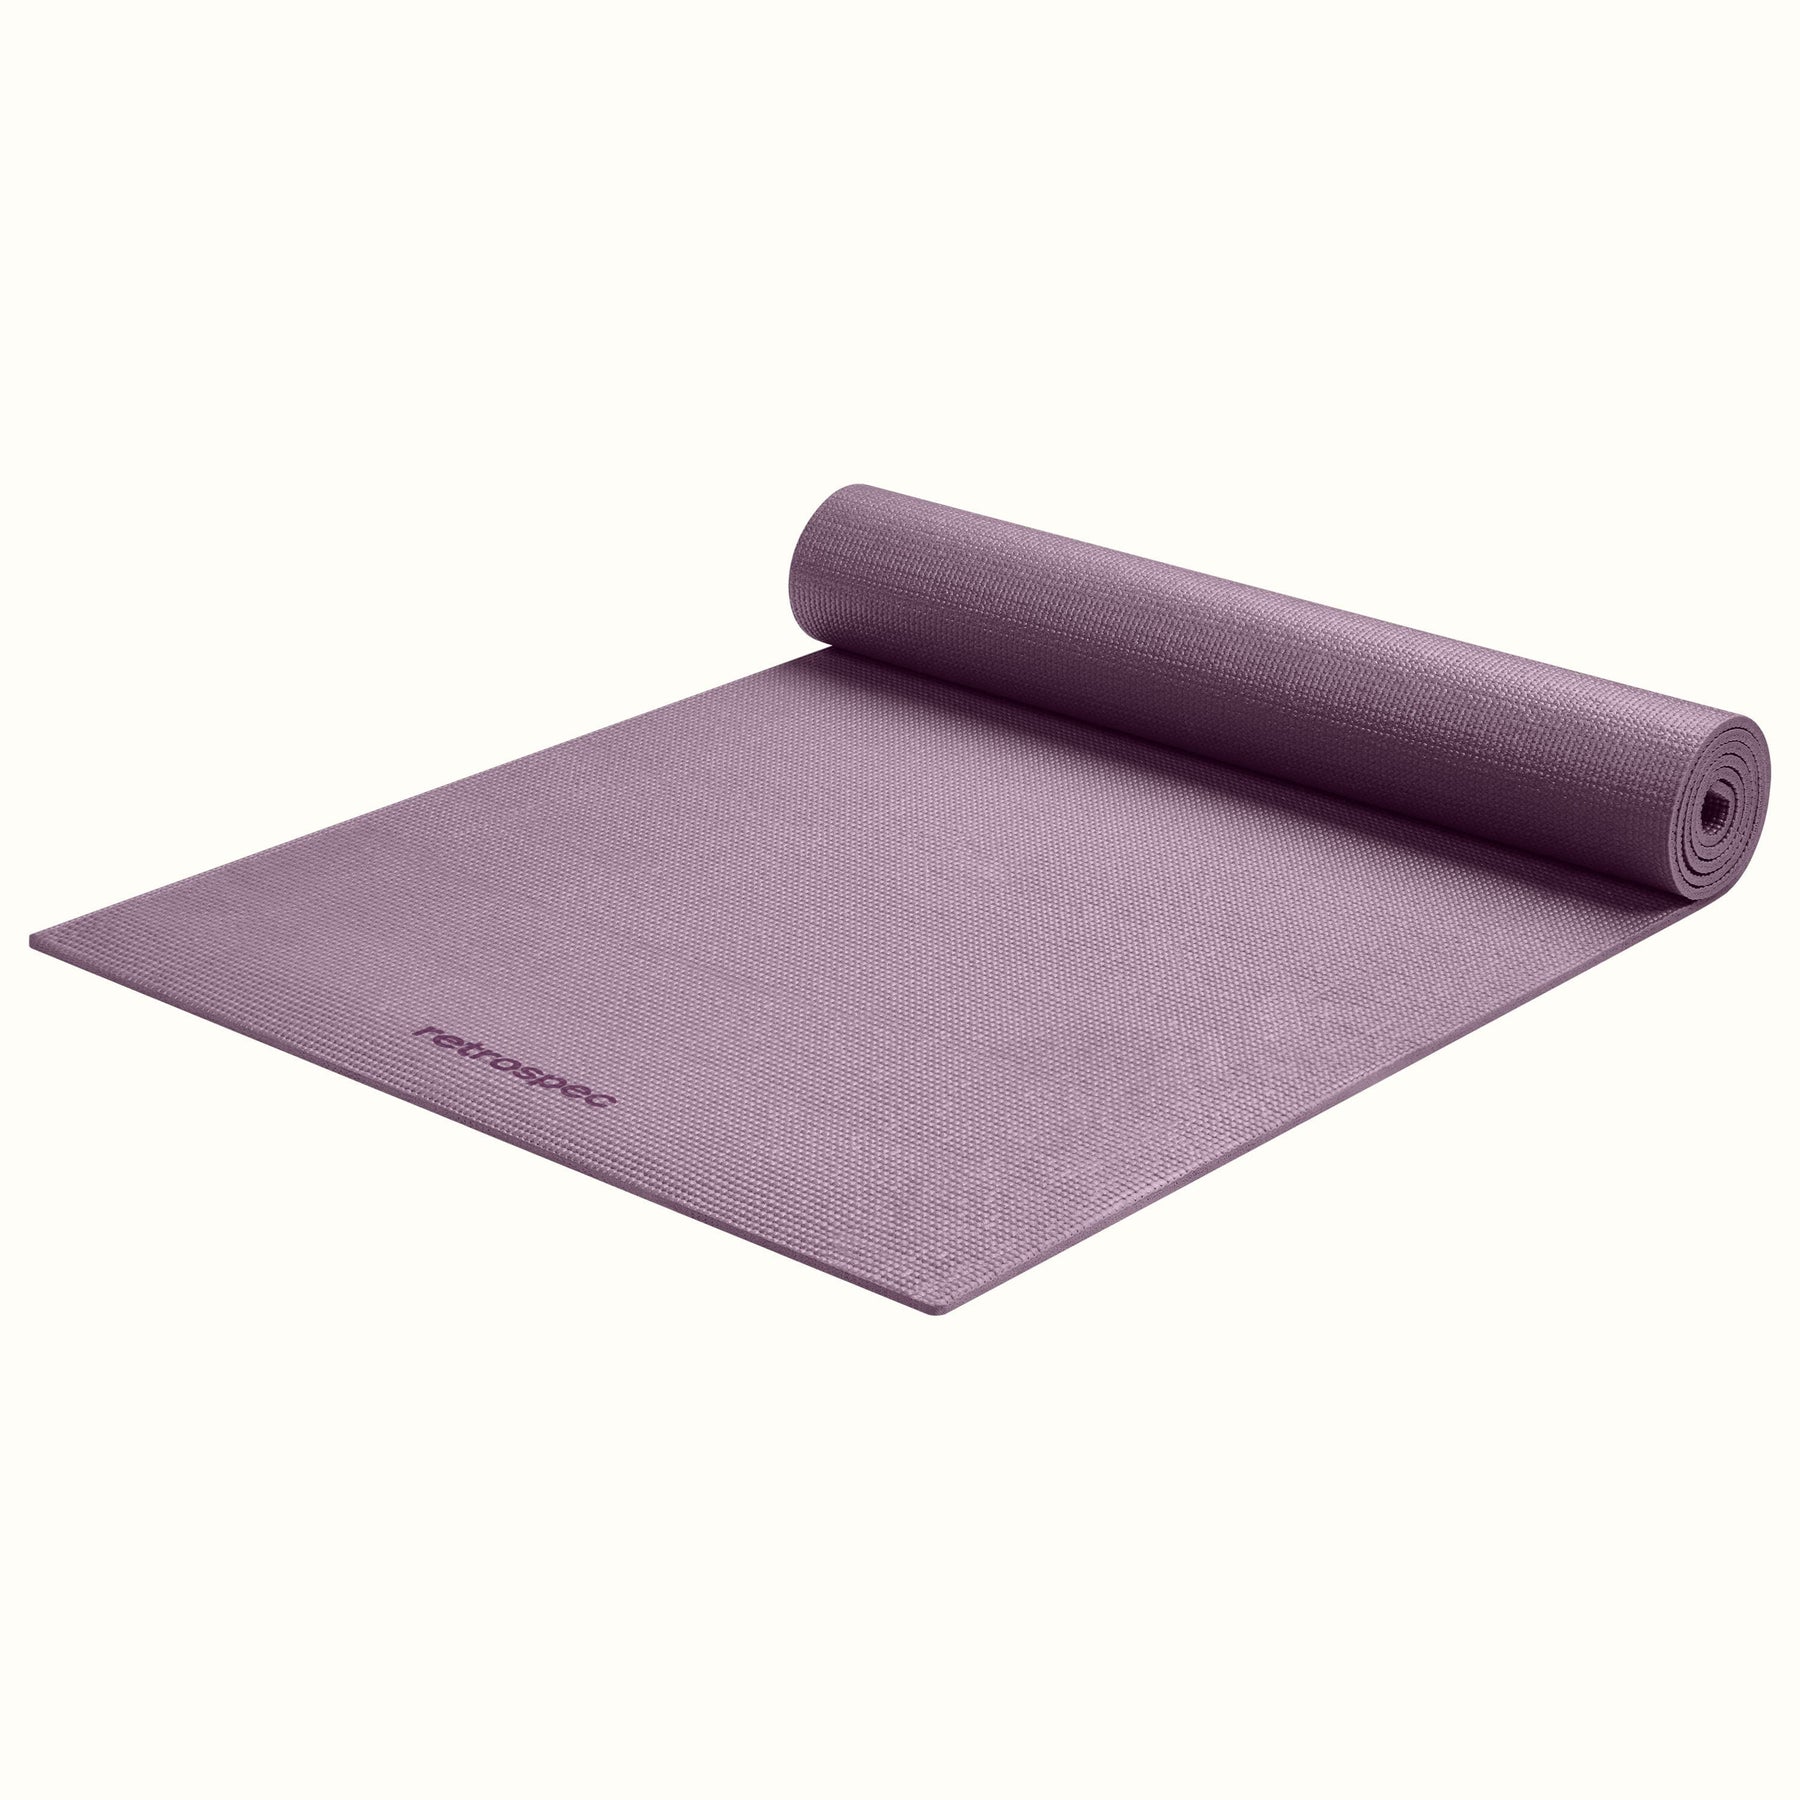 The PDX Carpet Yoga MatThe PDX Carpet Yoga Mat